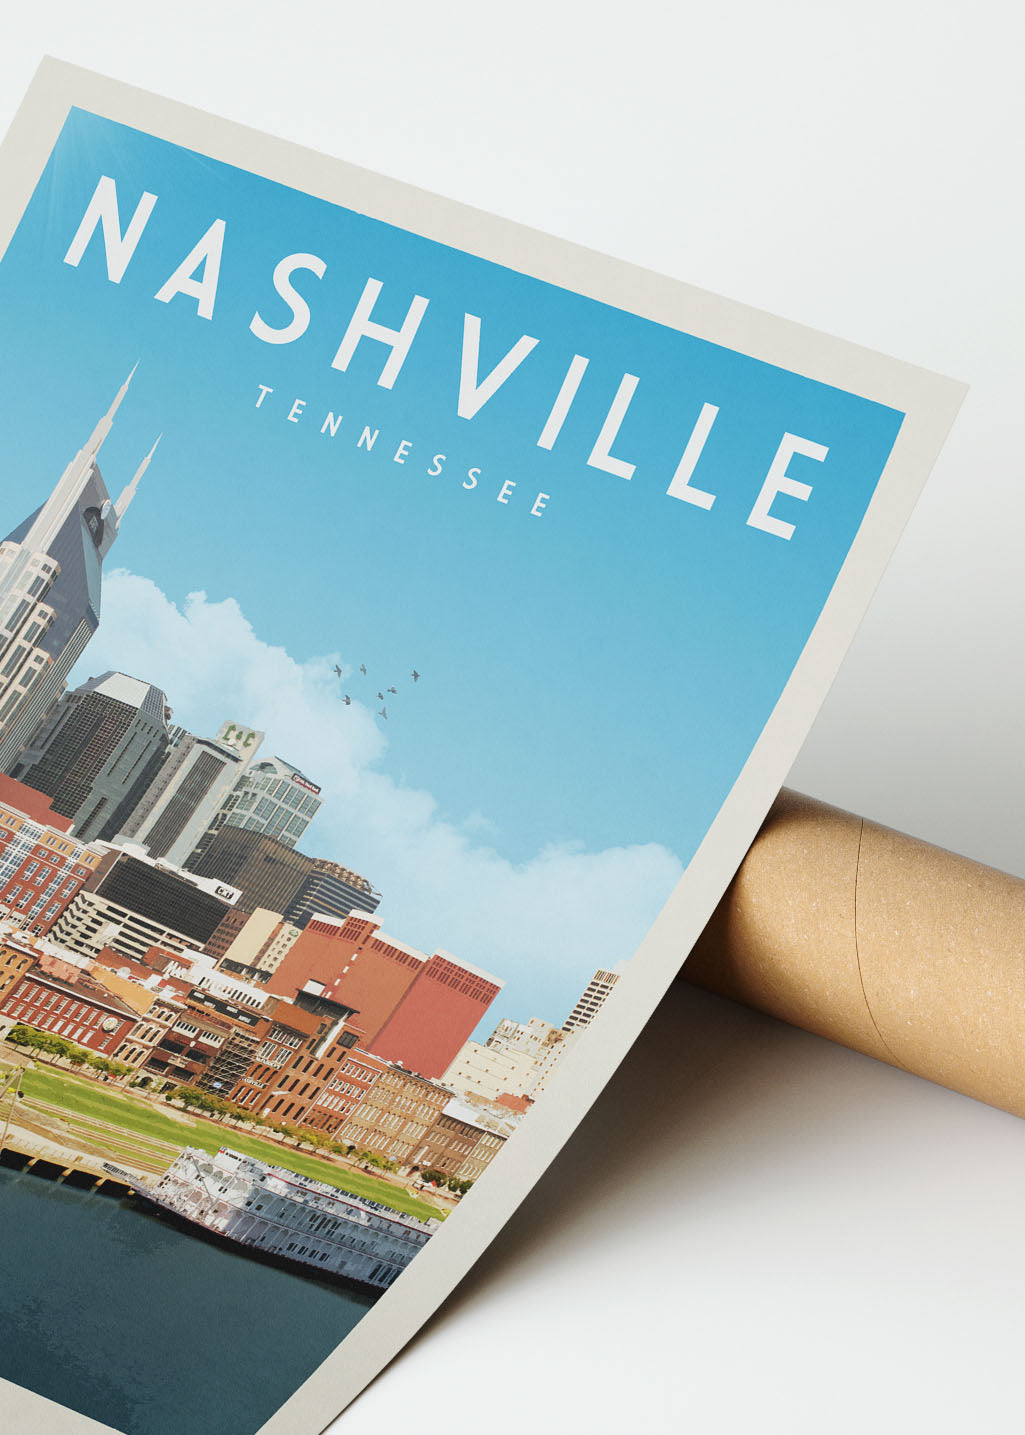 Nashville, Tennessee - Vintage Travel Print - Vintaprints